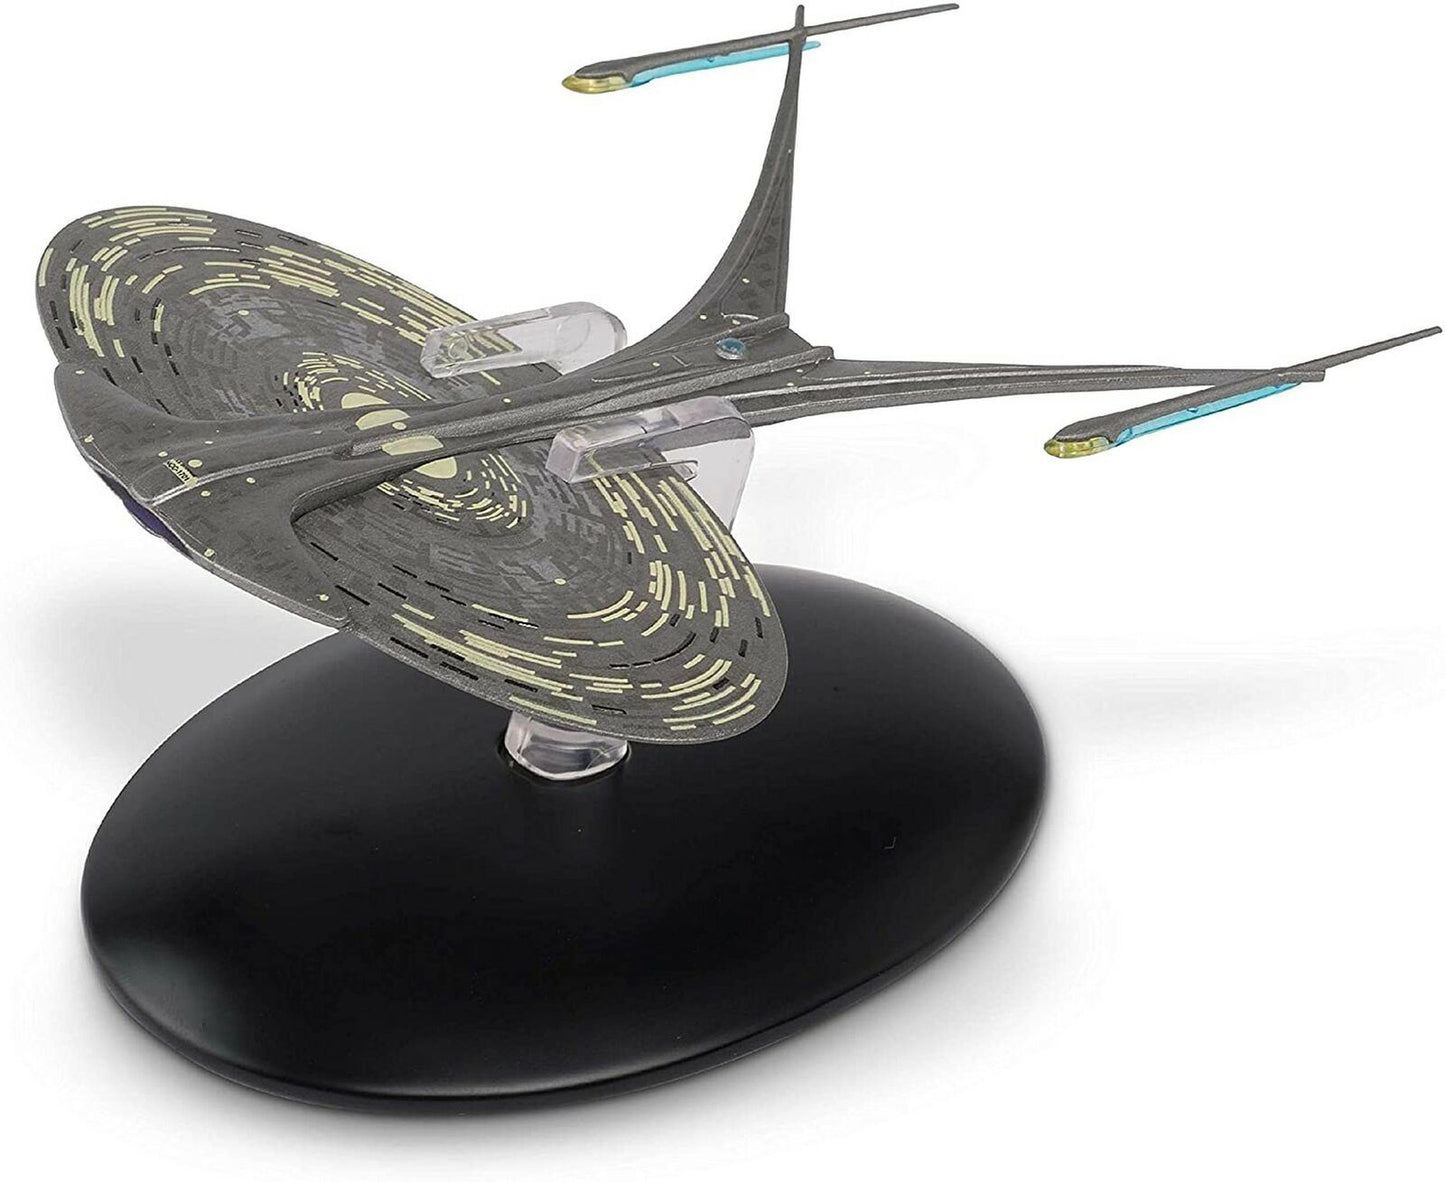 #89 U.S.S. Enterprise NCC-1701-J Starship Die-Cast Model (Eaglemoss / Star Trek)